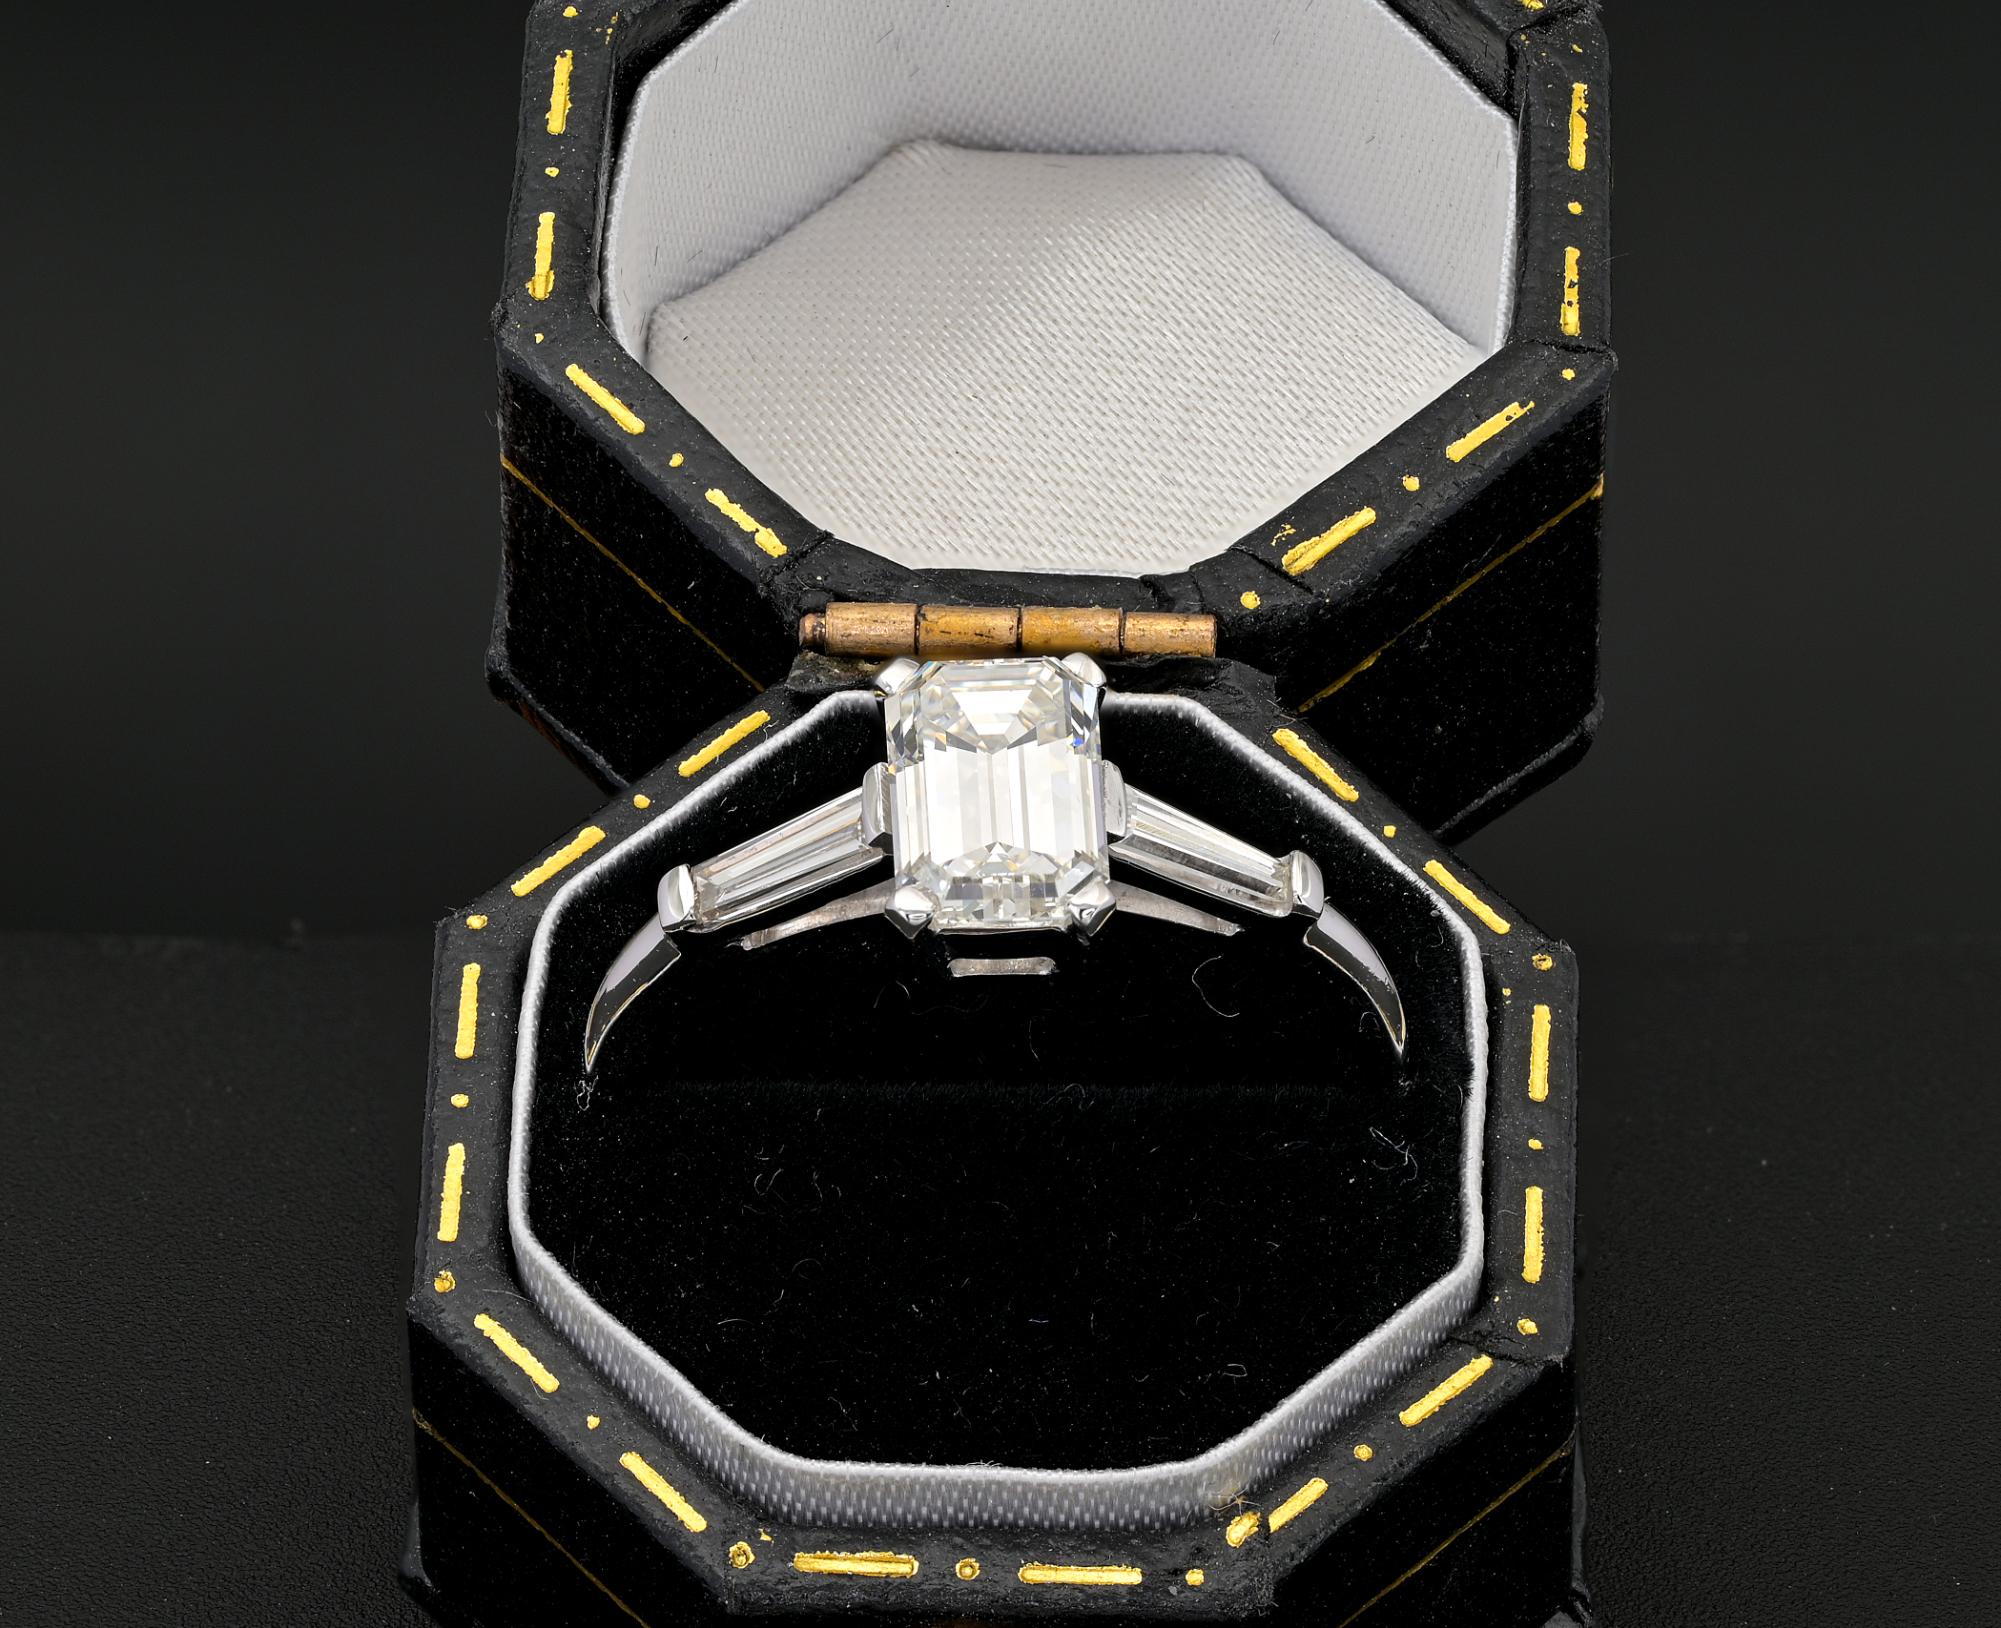 Dieser zeitgenössische, stilvolle Diamant-Solitärring wurde vollständig von Hand aus massivem 18 KT Weißgold gefertigt.
Genaue und sorgfältige Verarbeitung
In der Mitte mit einer gewichteten Off-Montage 1,21 Ct Emerald cut Diamond 7,54 mm. x 5,75